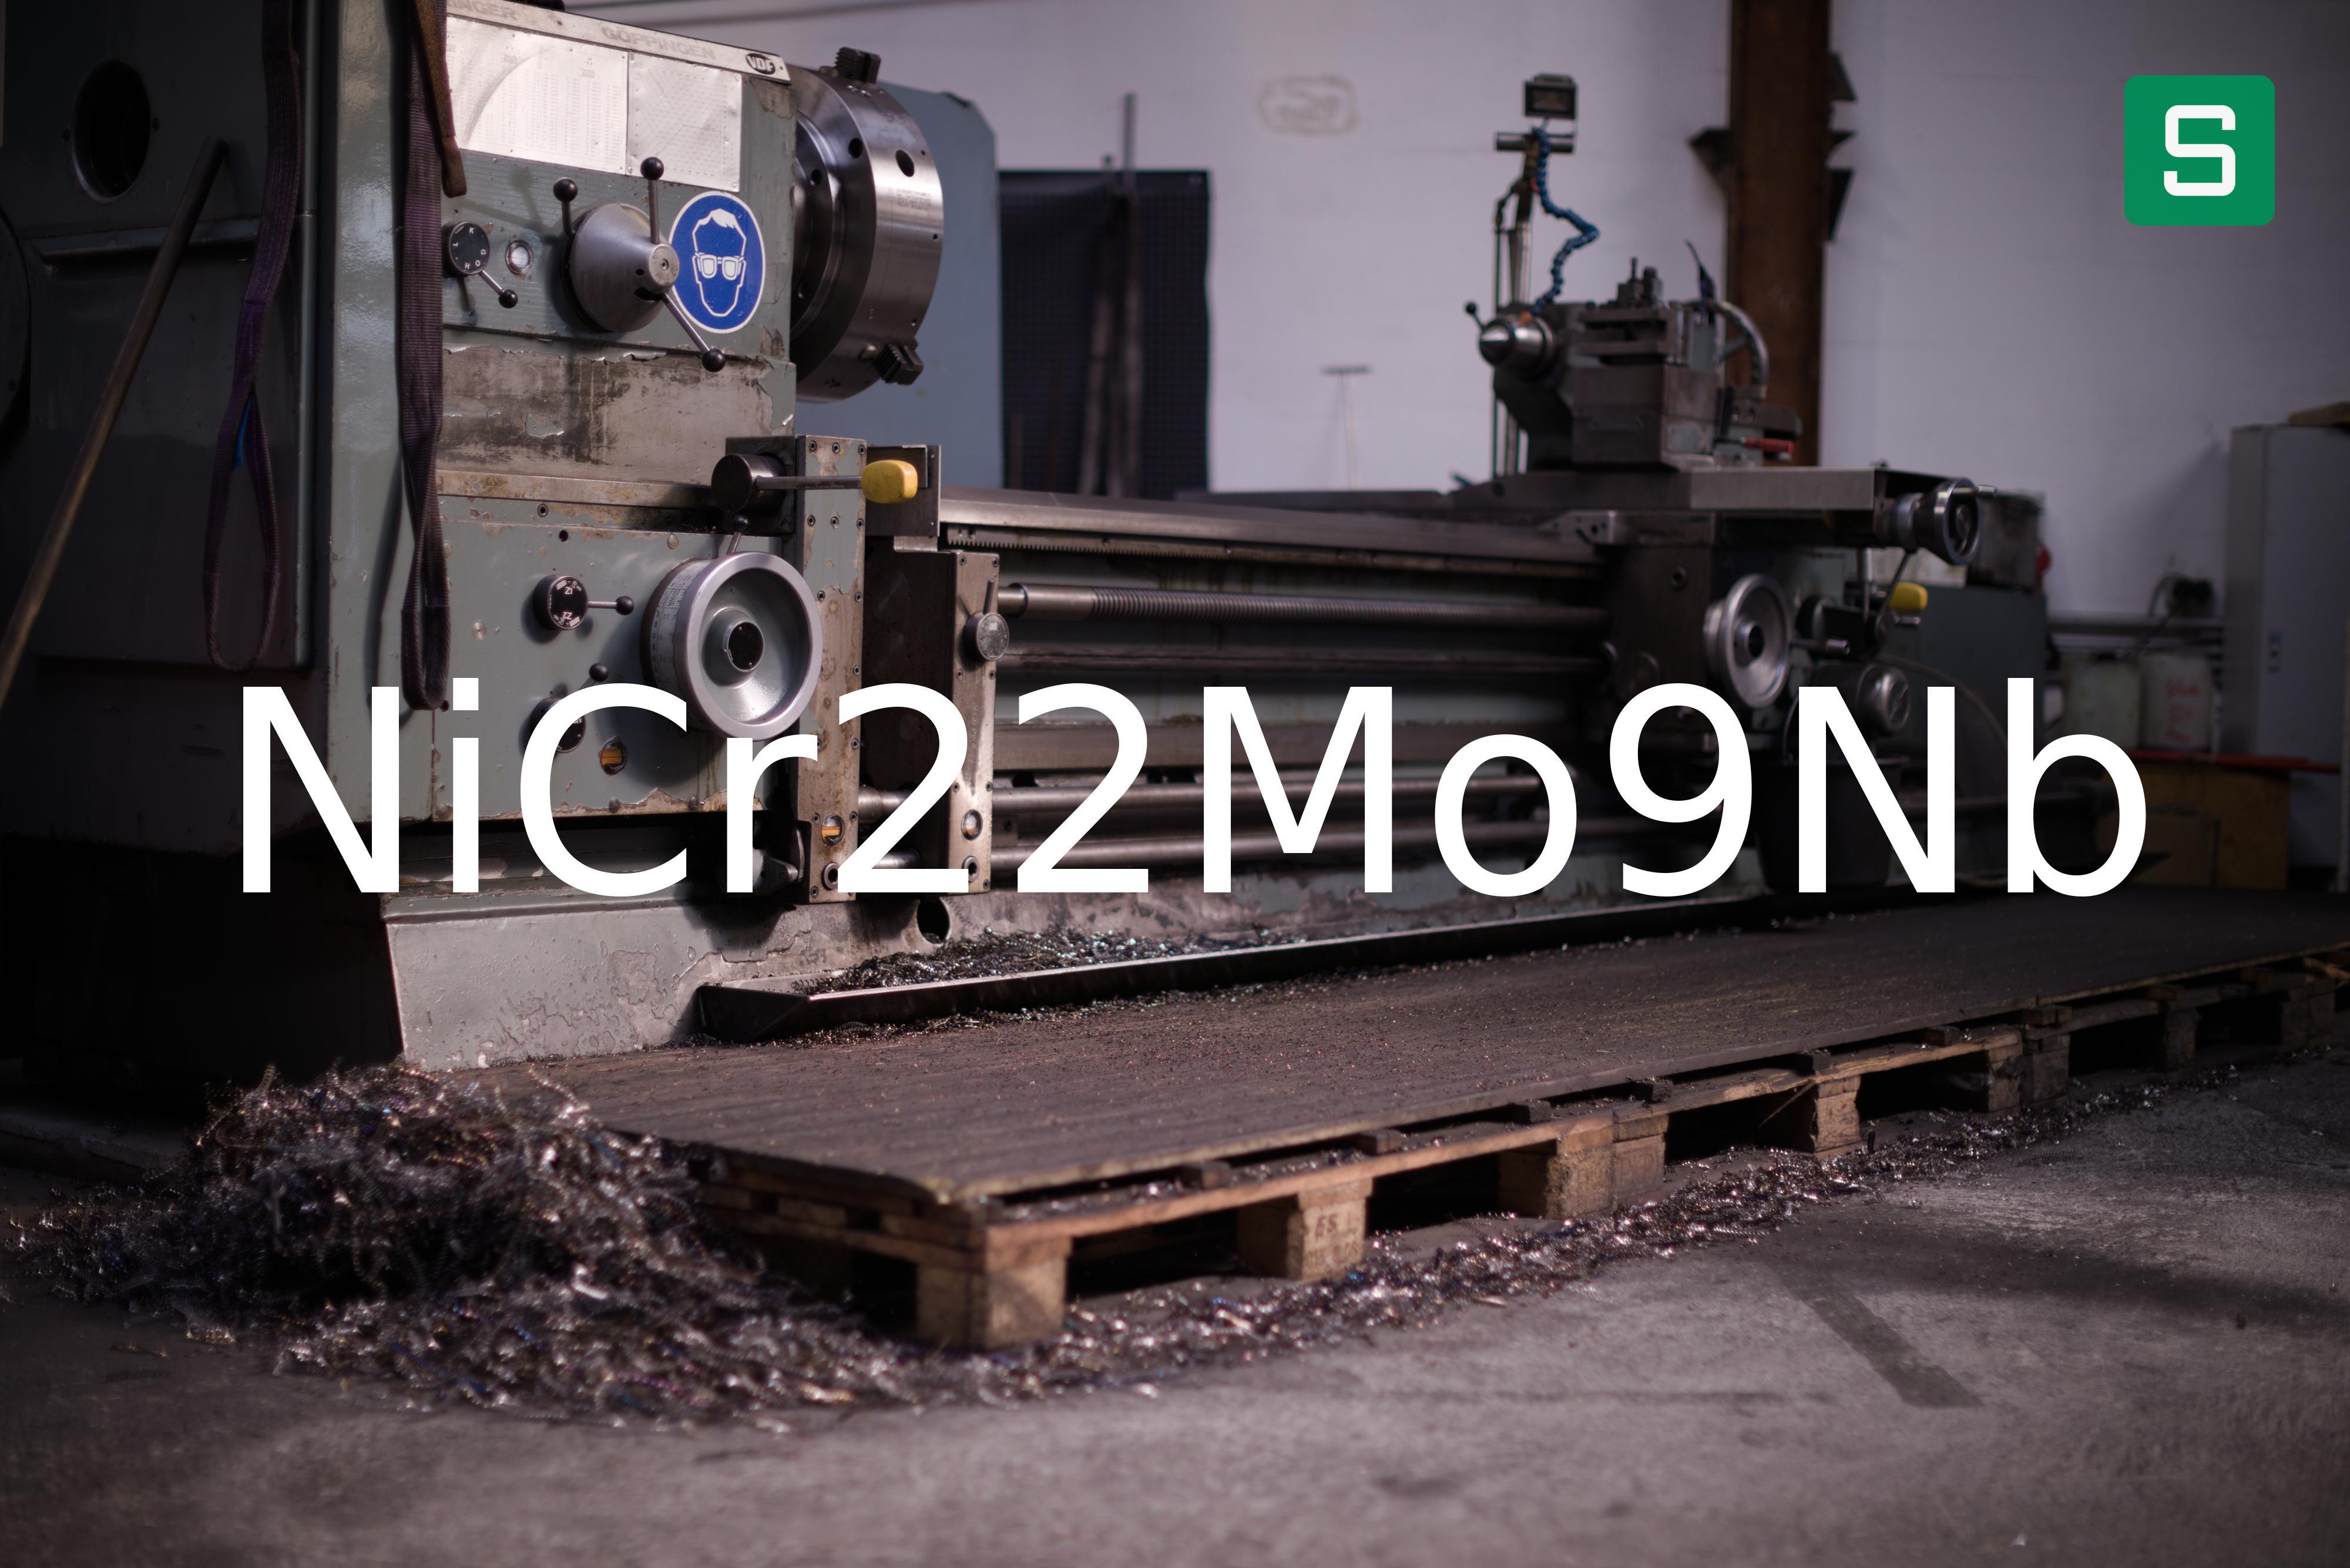 Steel Material: NiCr22Mo9Nb